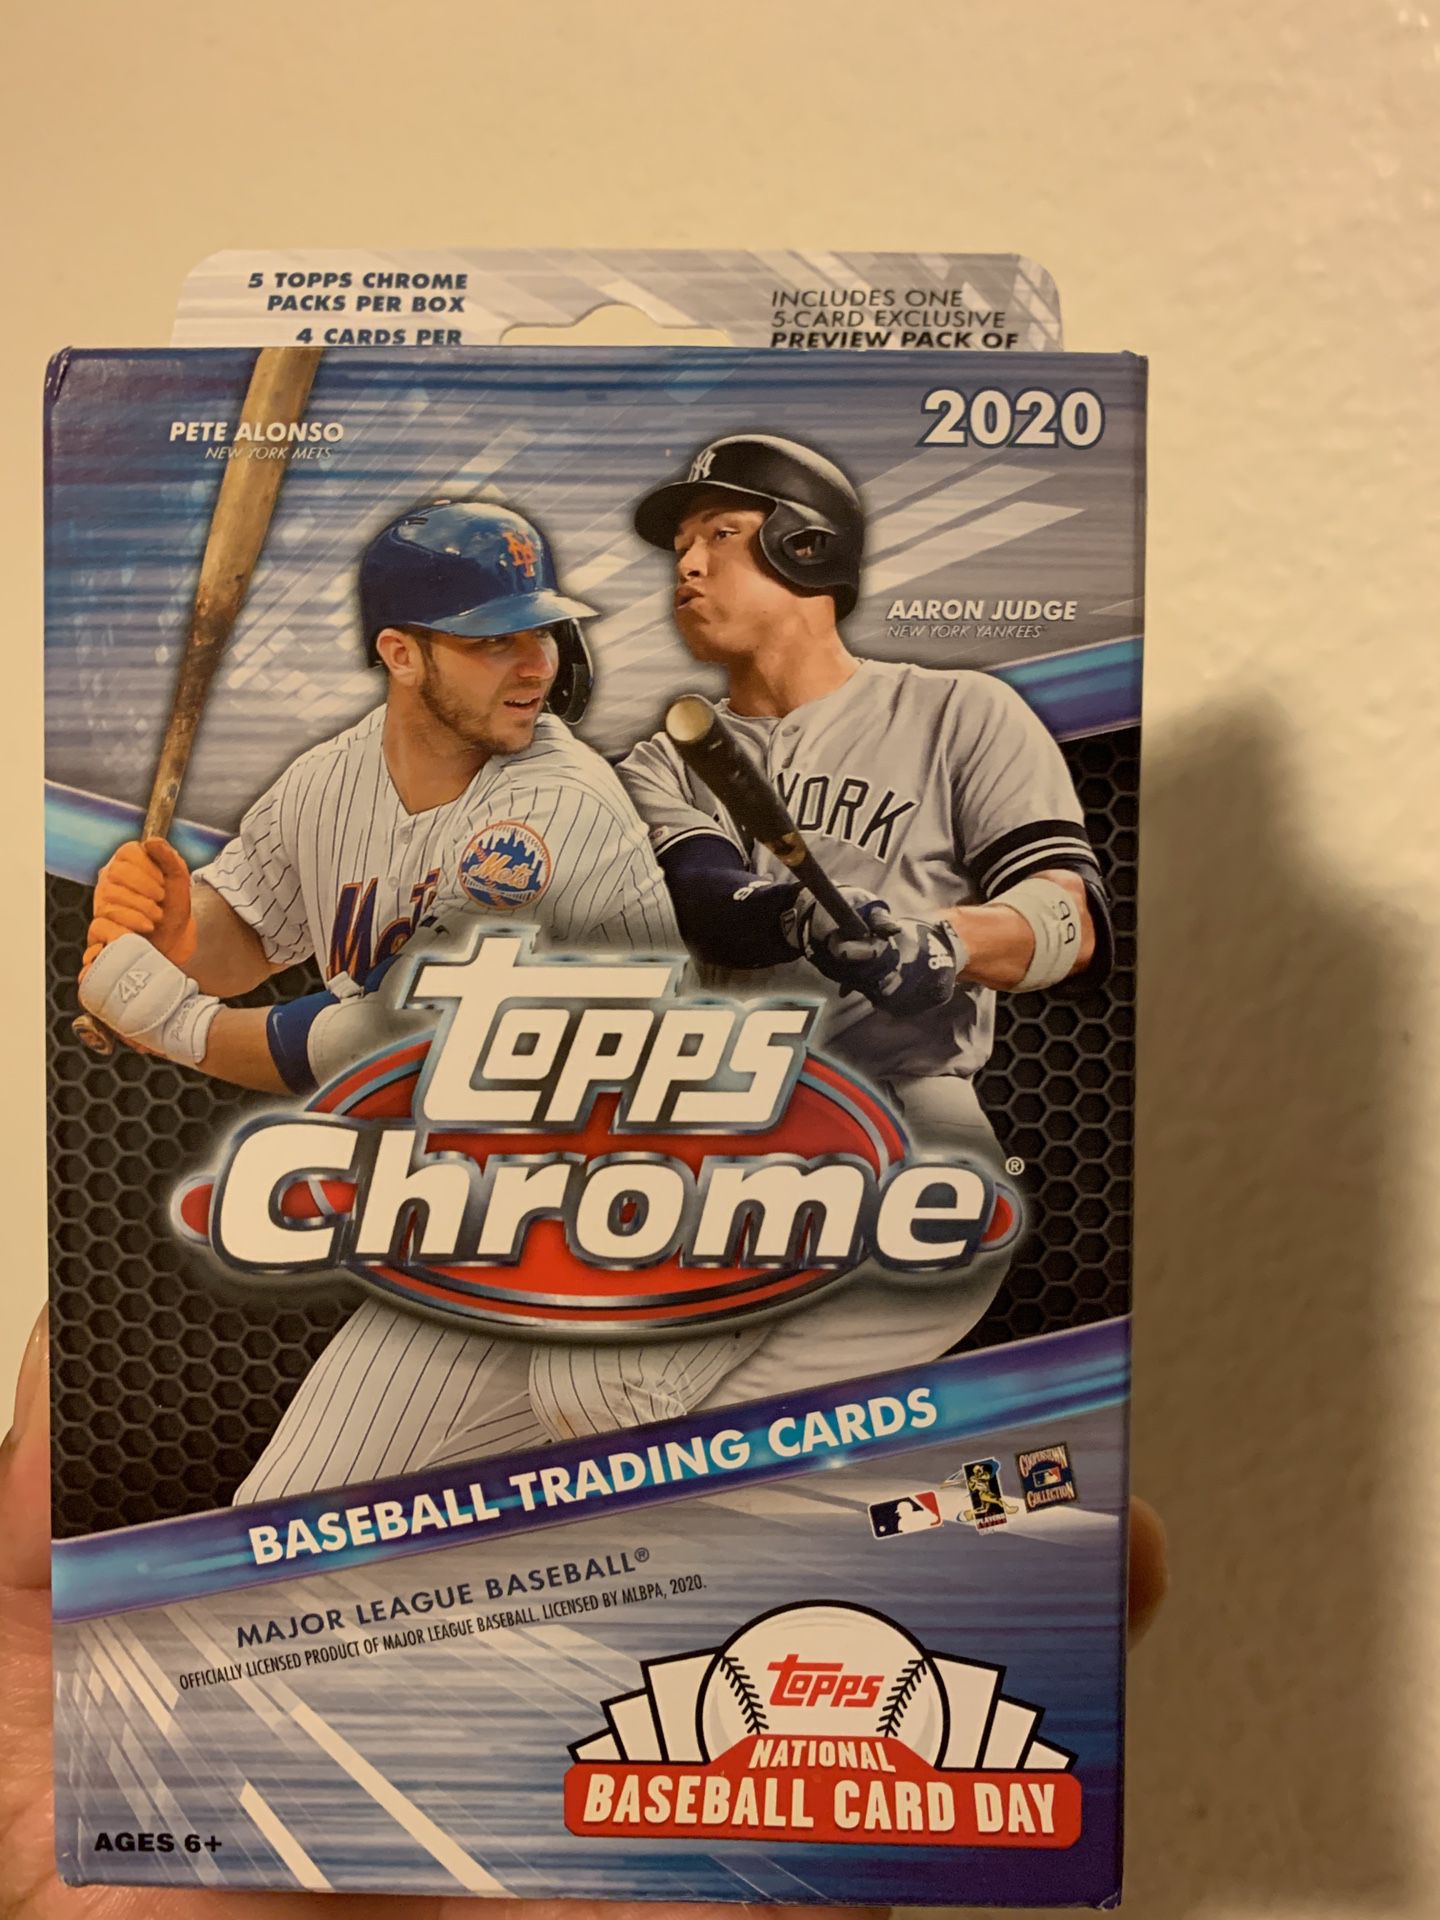 Topps chrome baseball trading cards